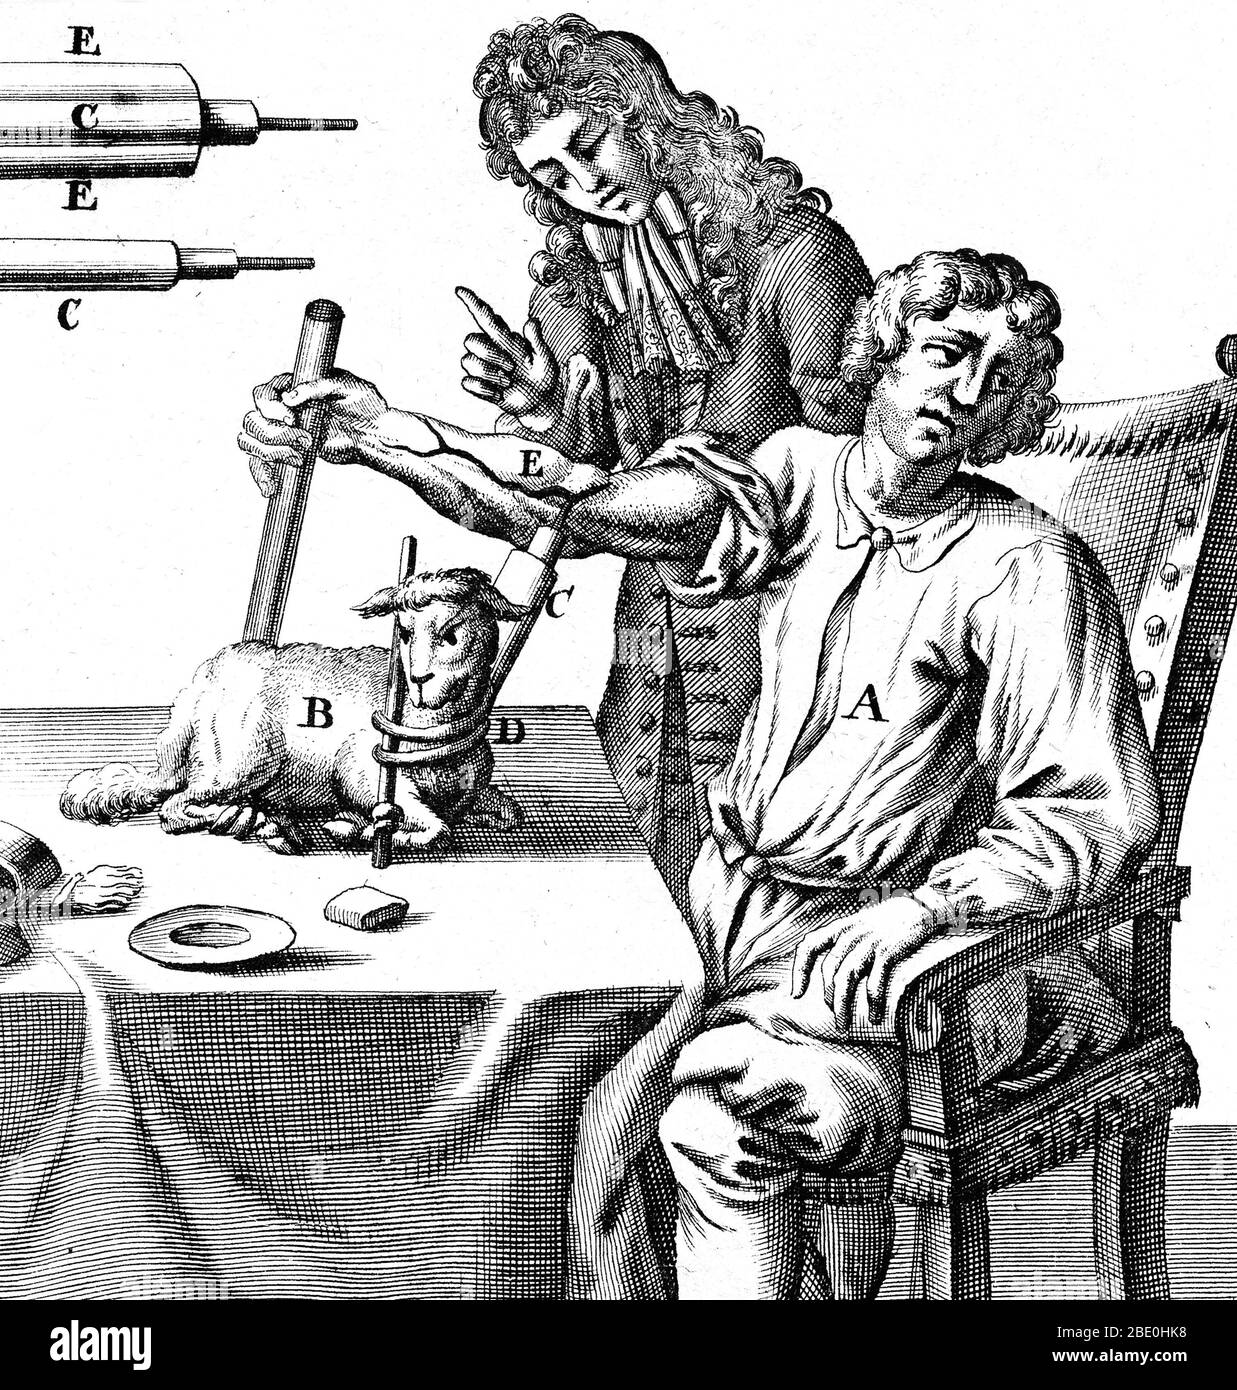 Transfusion sanguine précoce. Art historique du physiologiste anglais Richard Lower (1631-1691) transfusionnant le sang dans un bras d'homme d'un agneau en 1667. L'extrémité du tube utilisé pour percer les vaisseaux sanguins et transférer le sang se trouve en haut à gauche. La première plus basse a démontré la transfusion du sang de l'artère d'un chien à la veine d'un autre en 1665. Les tentatives ultérieures d'autres personnes de transfuter des animaux vers les humains ont entraîné quelques décès. Le Treatise du bas sur le coeur décrit le coeur comme une pompe musculaire plutôt qu'un organe 'gonflé par les esprits'. Il a déduit que le rouge vif du sang artériel Banque D'Images